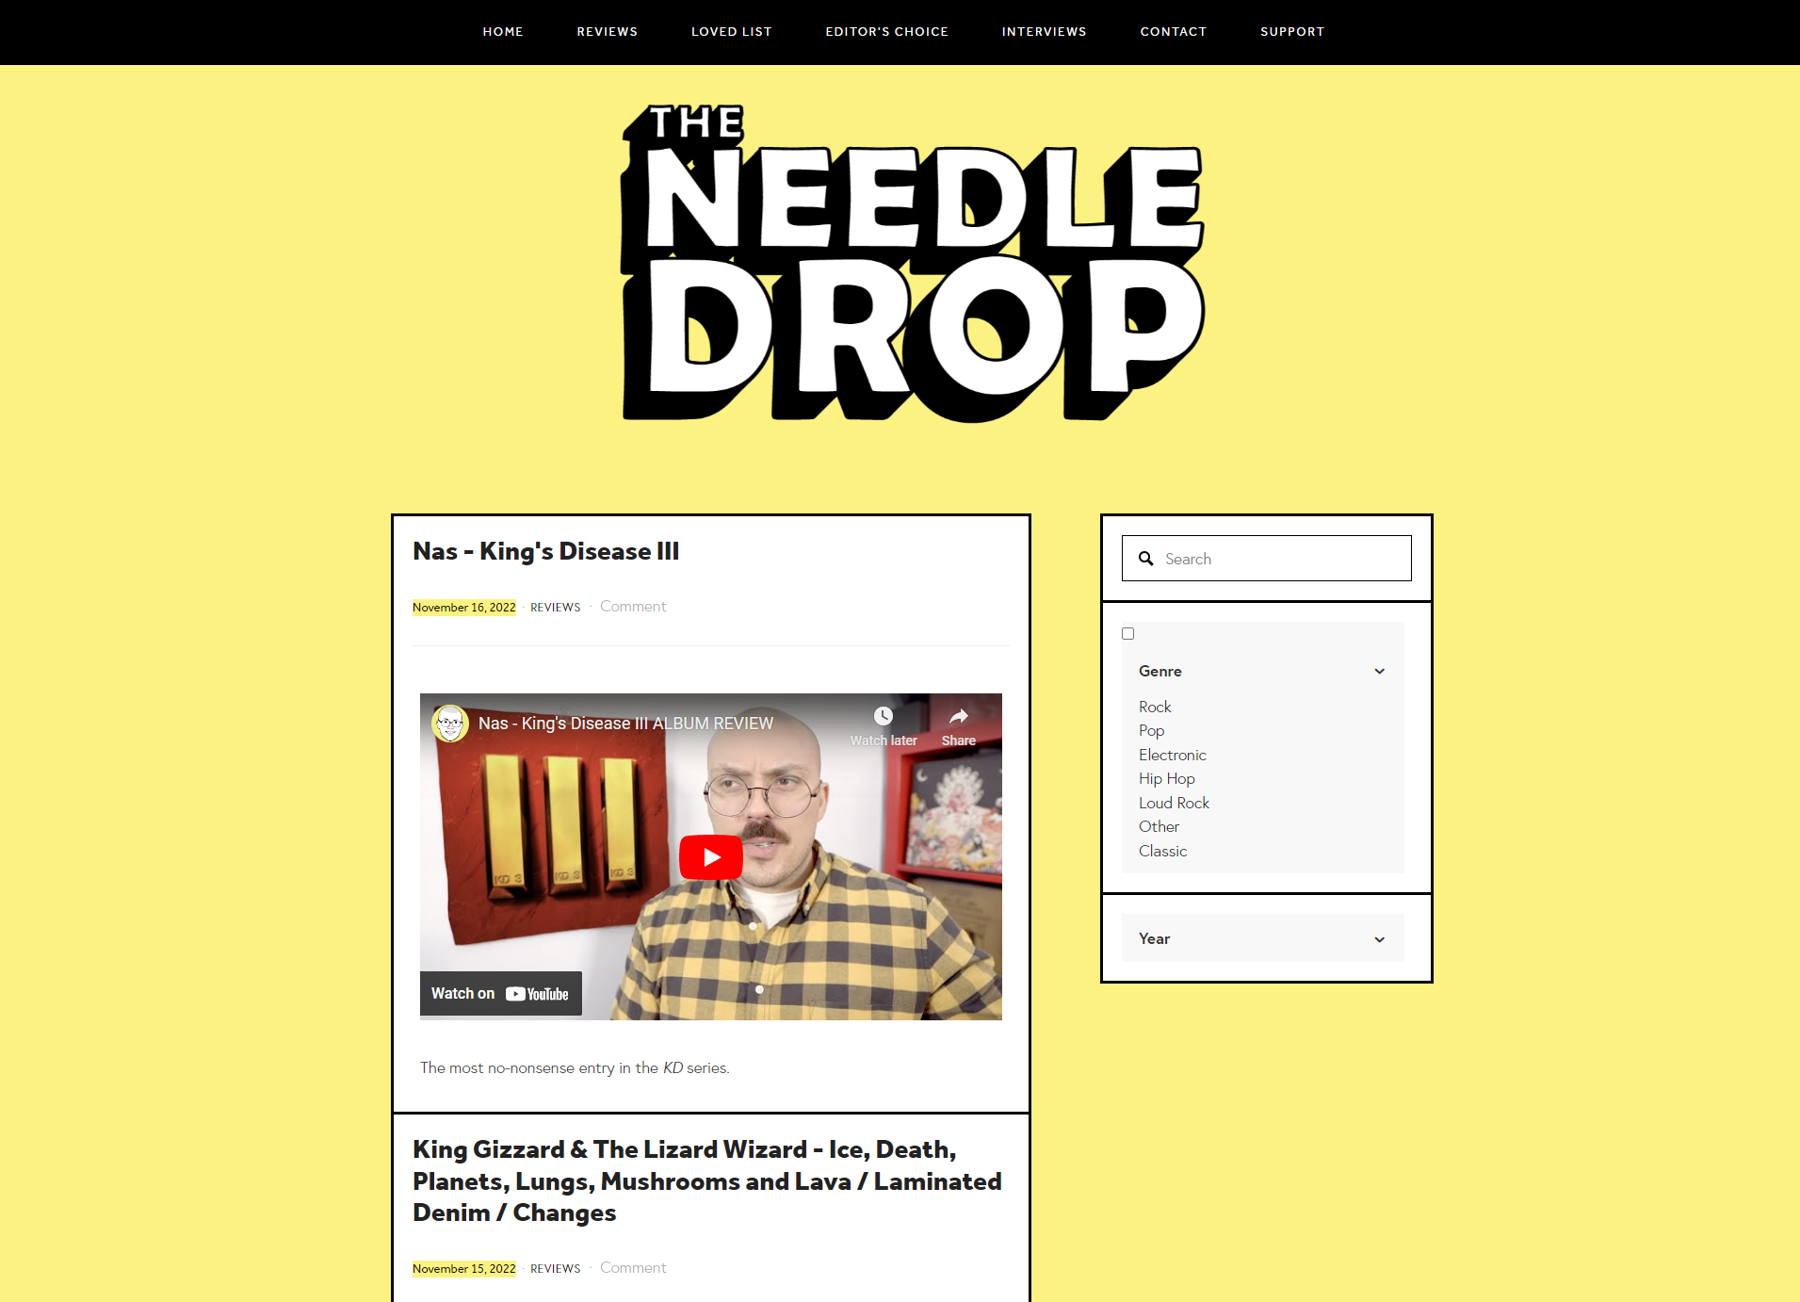 Скриншот статей — The Needle Drop, из коллекции примеров блога.